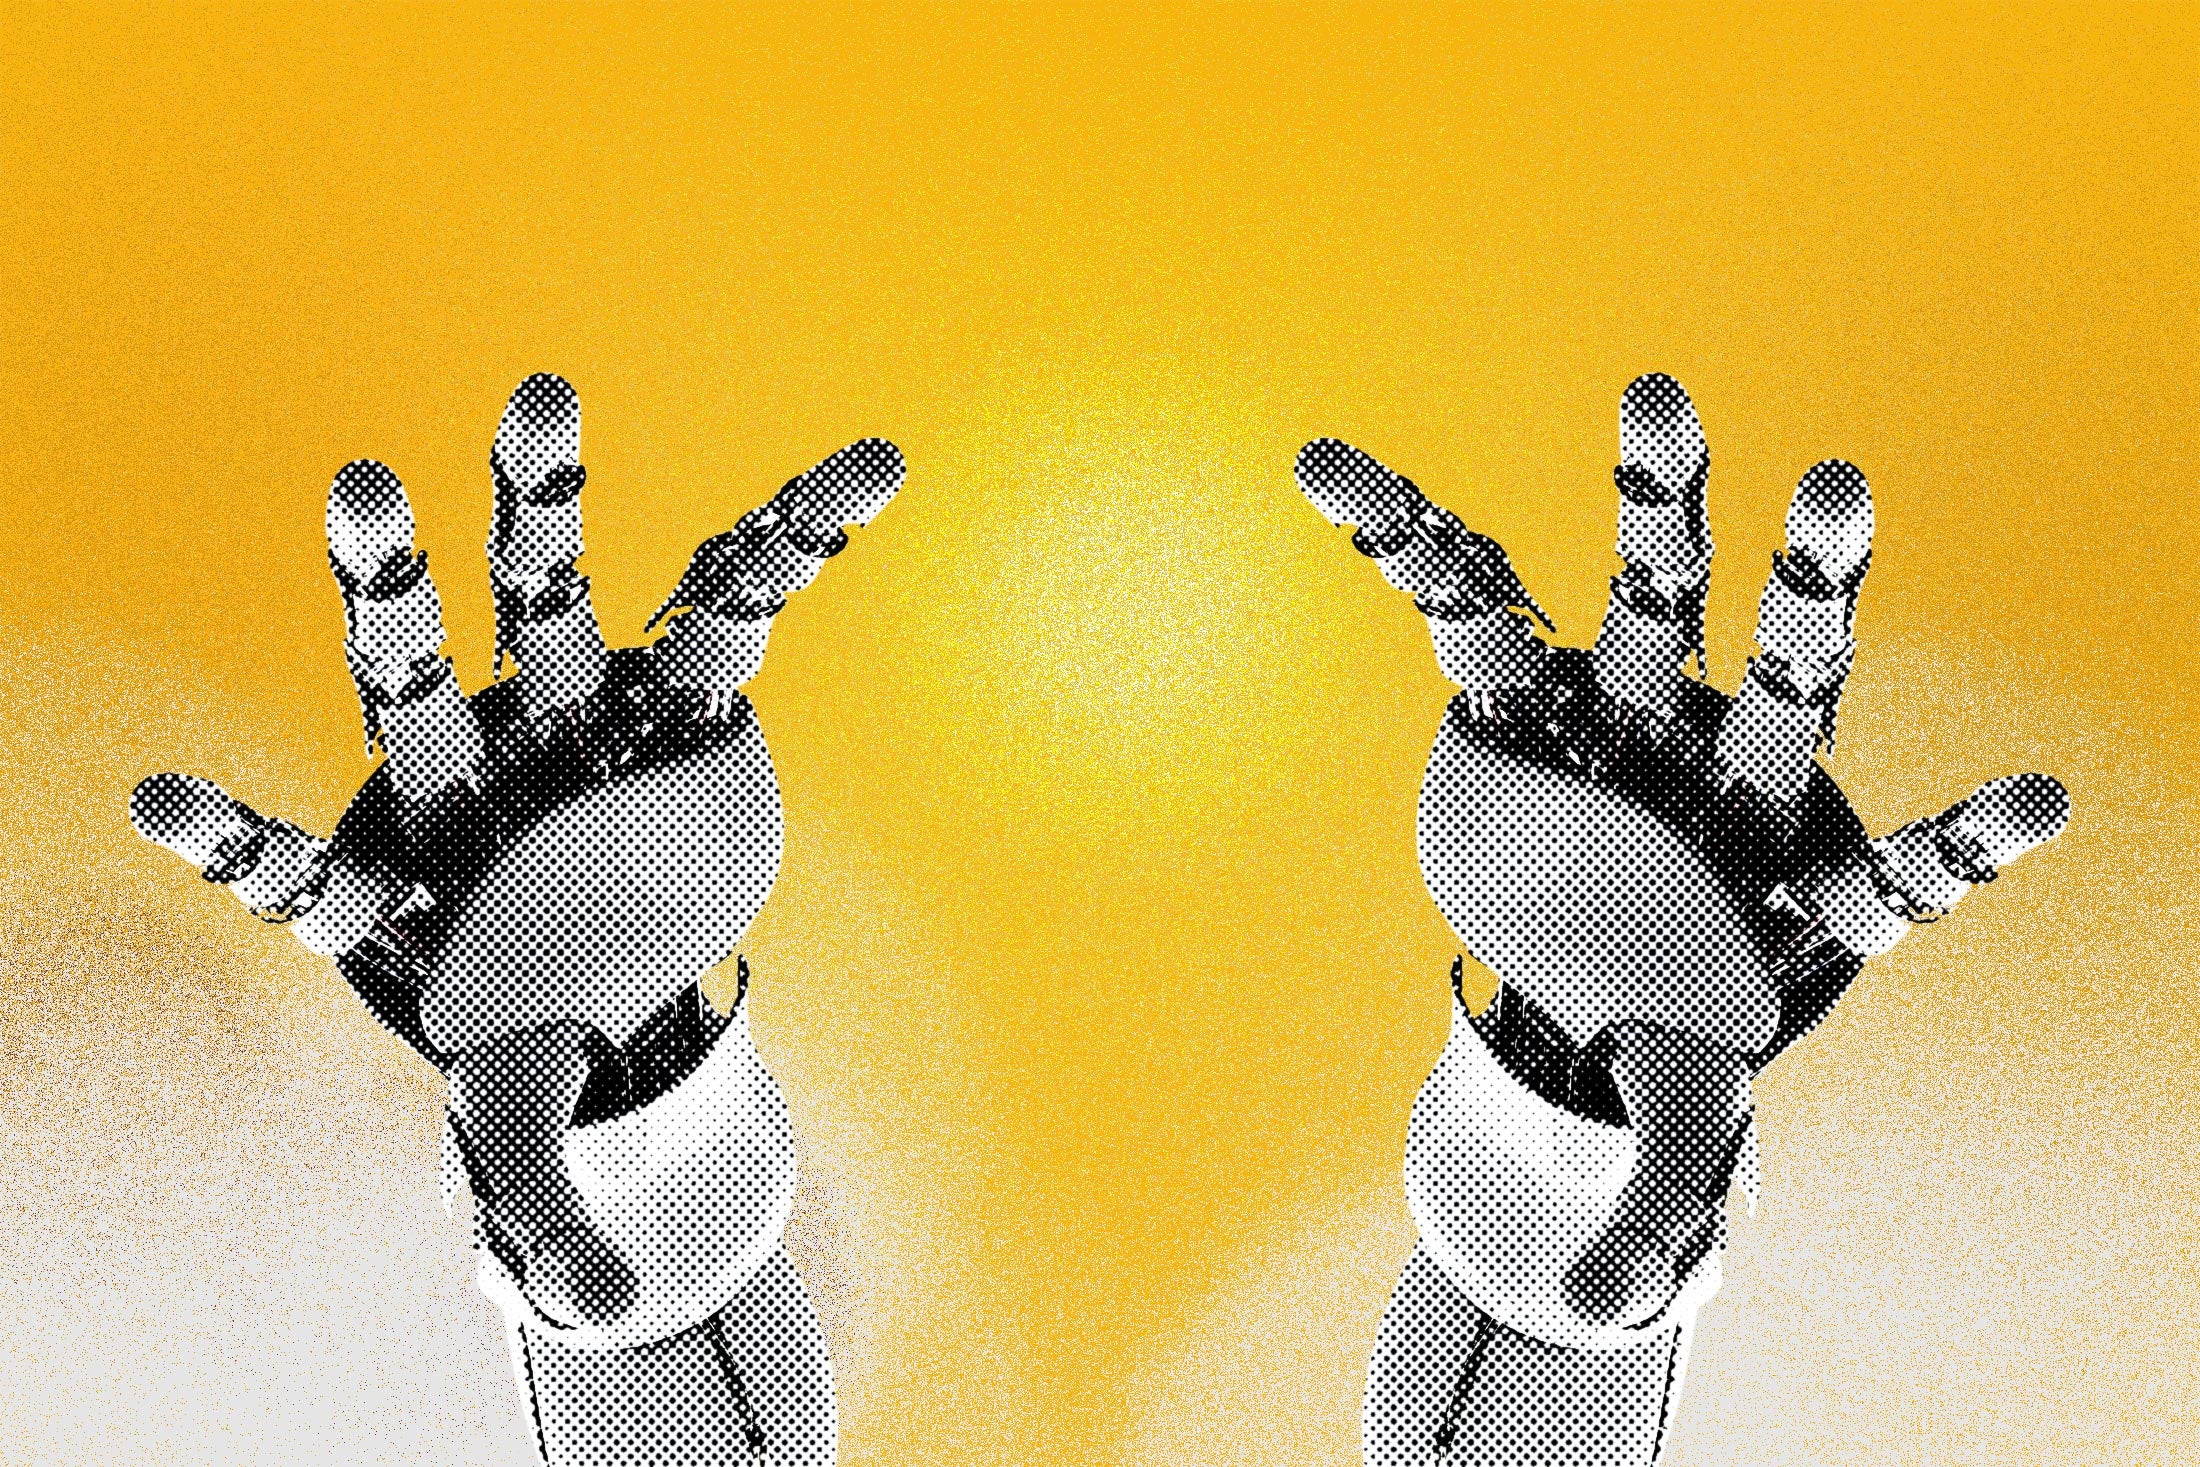 Robot hands reaching toward a golden heaven